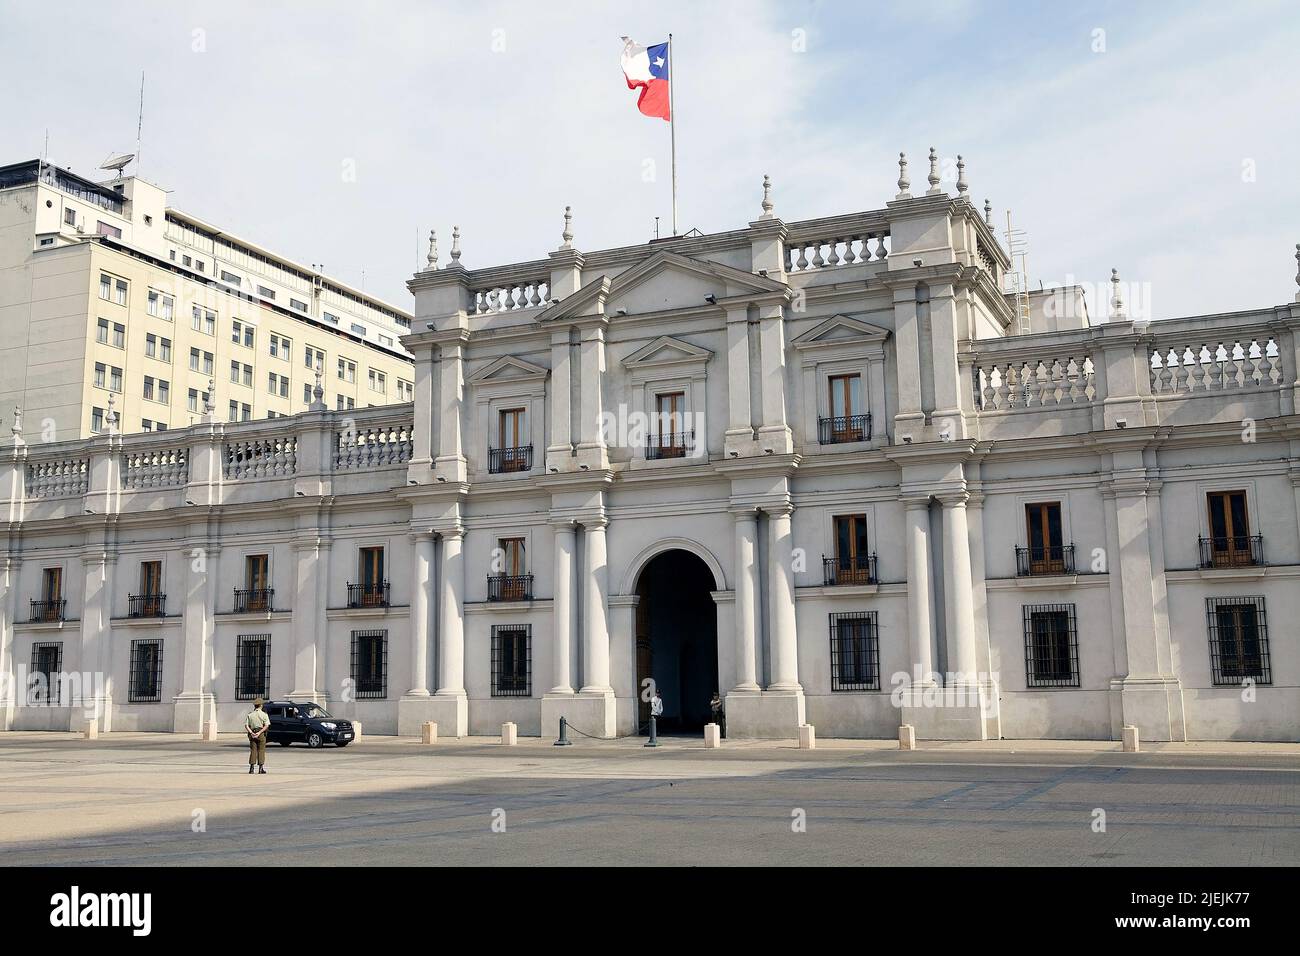 Vorderansicht des Palastes La Moneda, Santiago de Chile, Chile. Der Palast La Moneda ist der Sitz des Präsidenten der Republik Chile. Es wurde von mir entworfen Stockfoto